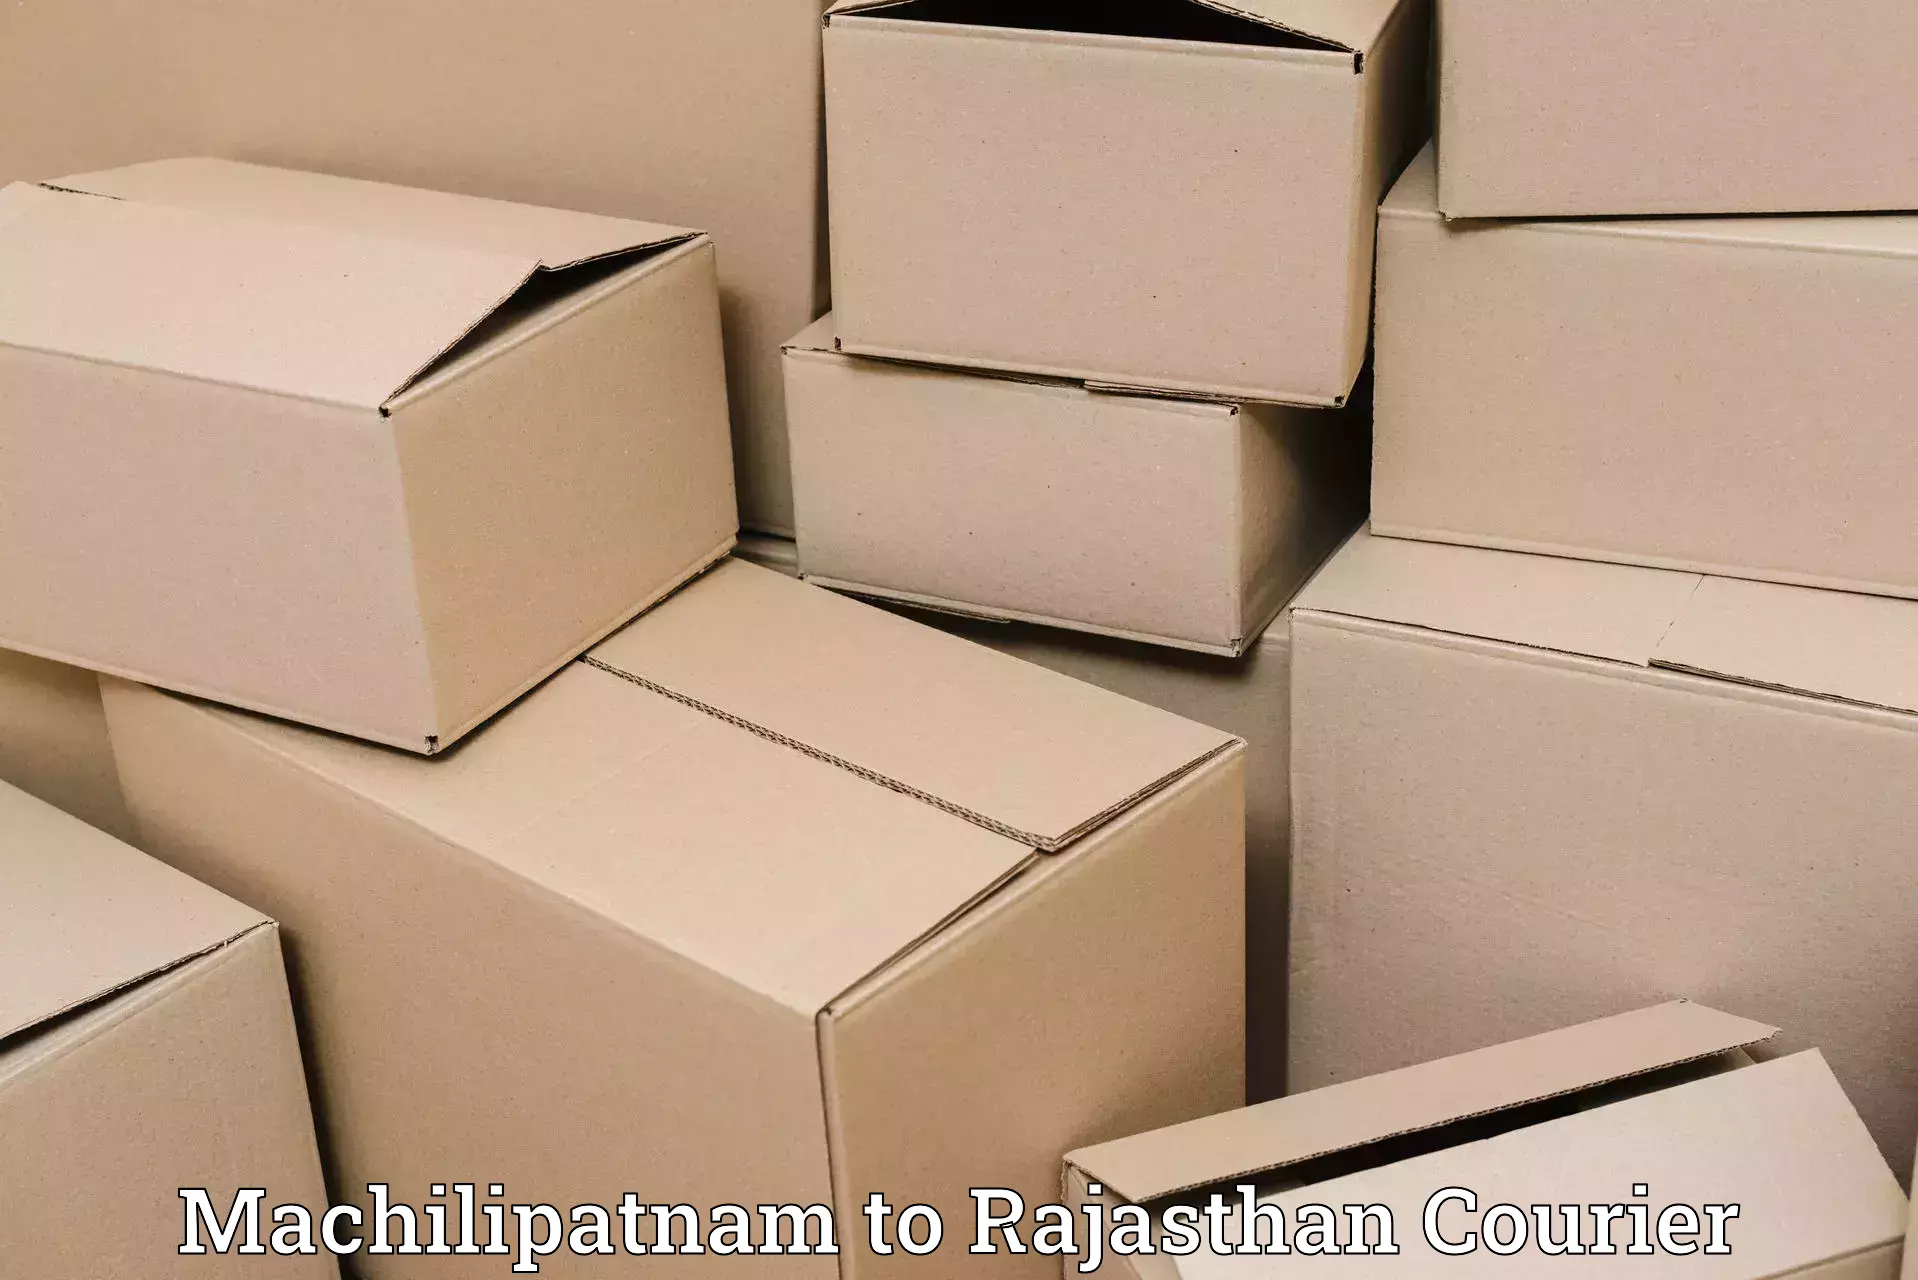 Professional courier services Machilipatnam to Viratnagar